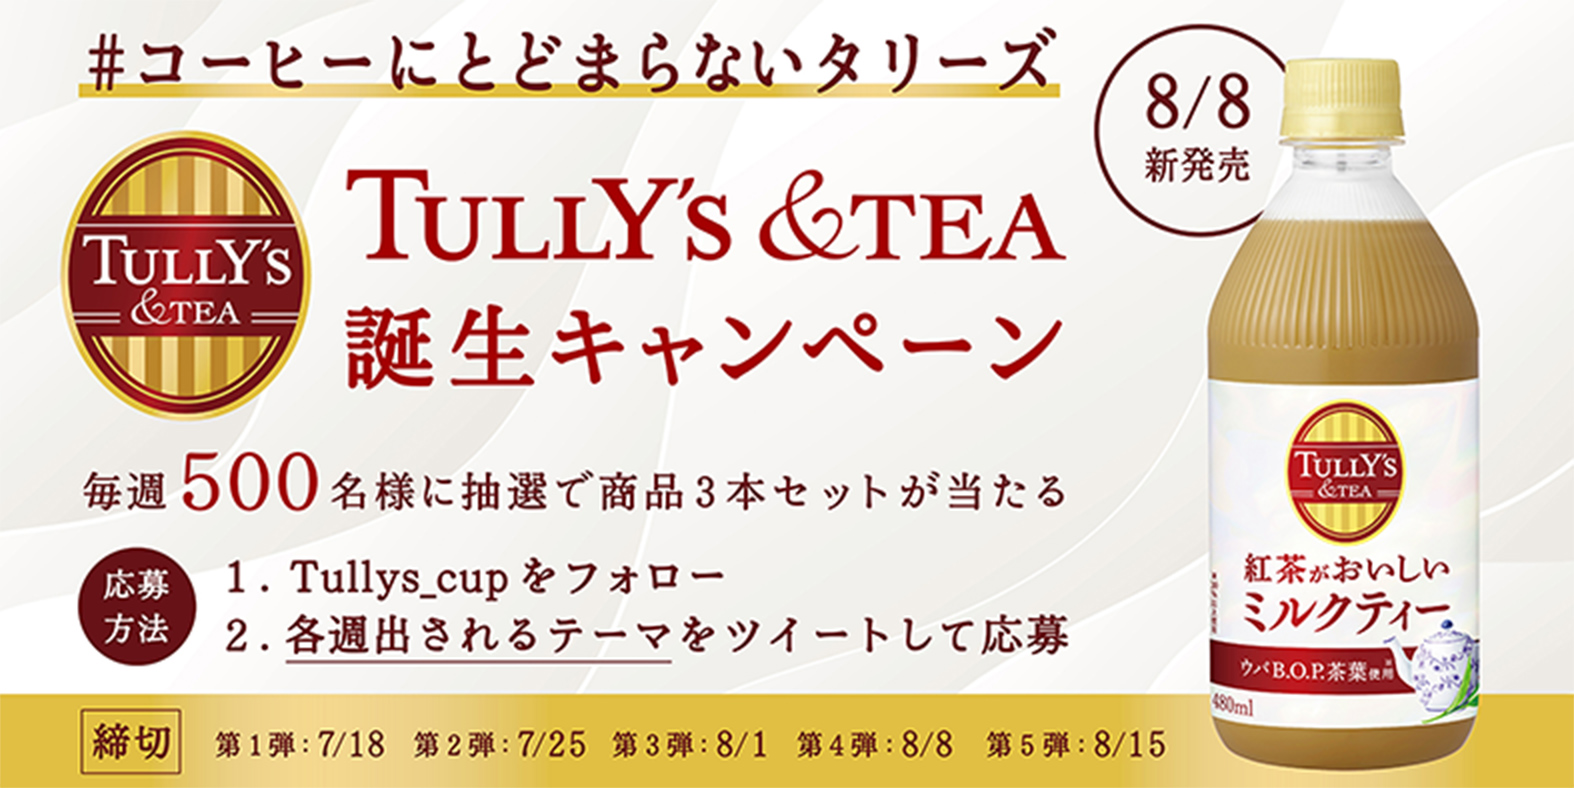 コーヒーにとどまらないタリーズ TULLY’S &TEA 誕生キャンペーン